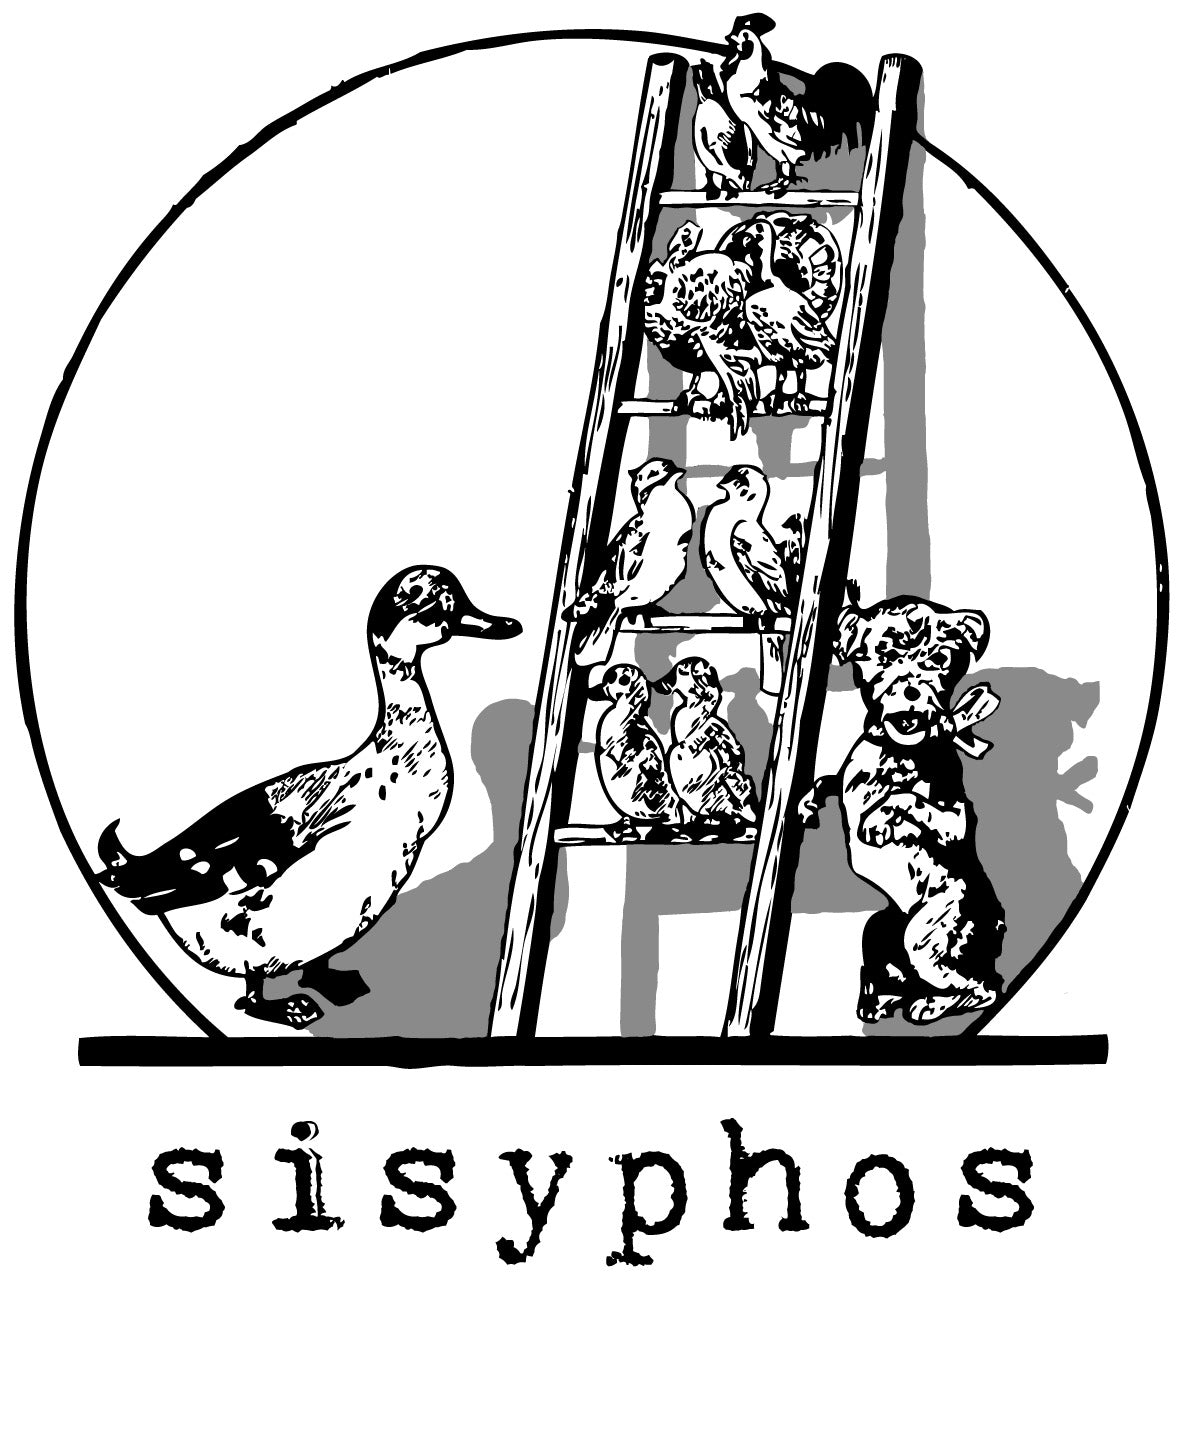 (c) Shopyphos.com